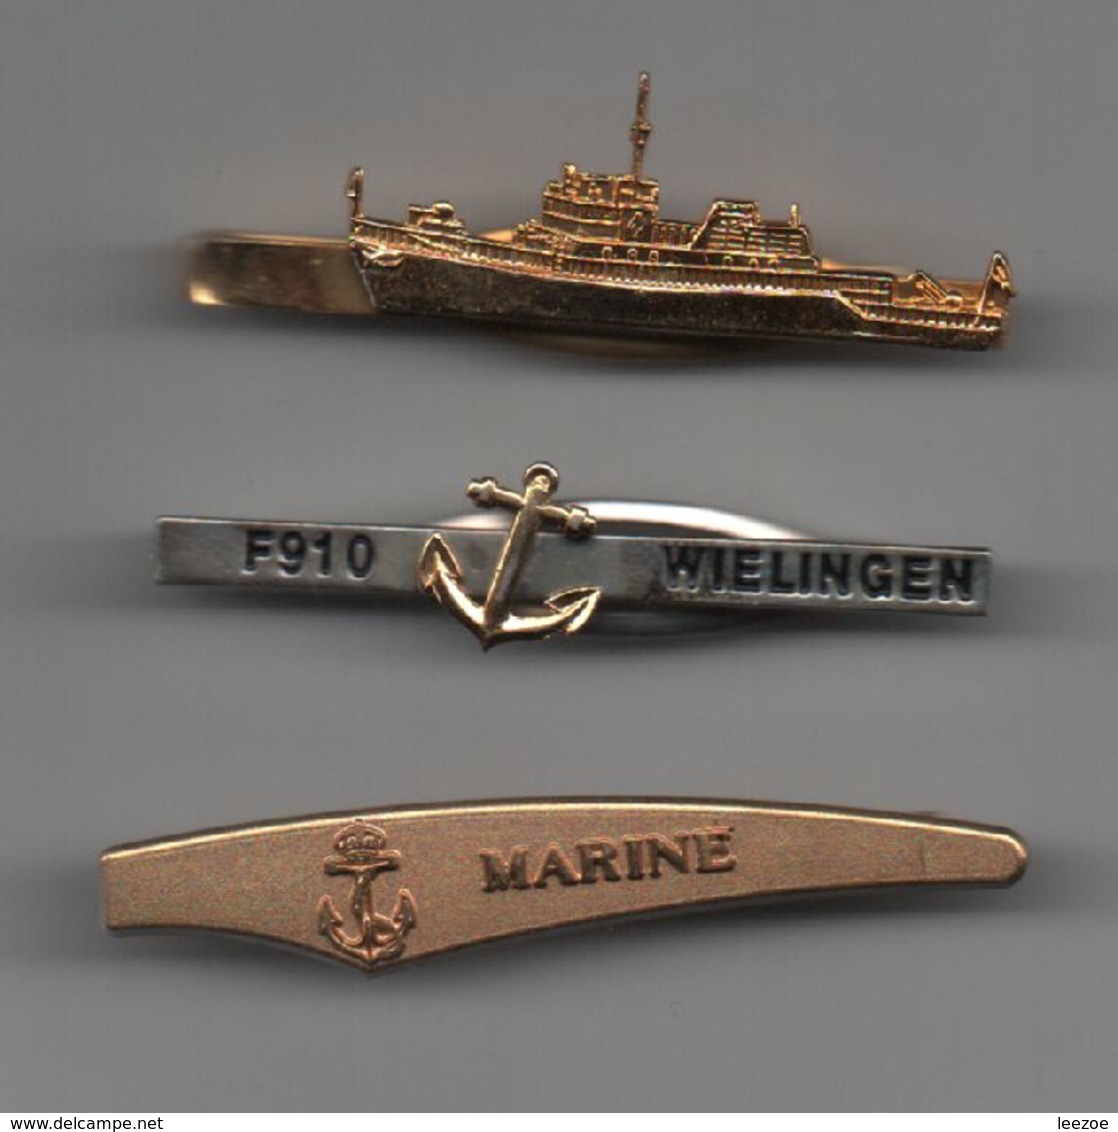 Pinces à Cravatte Marine F910 WIELINGEN, Bateaux, Navires....BT15 - Buttons